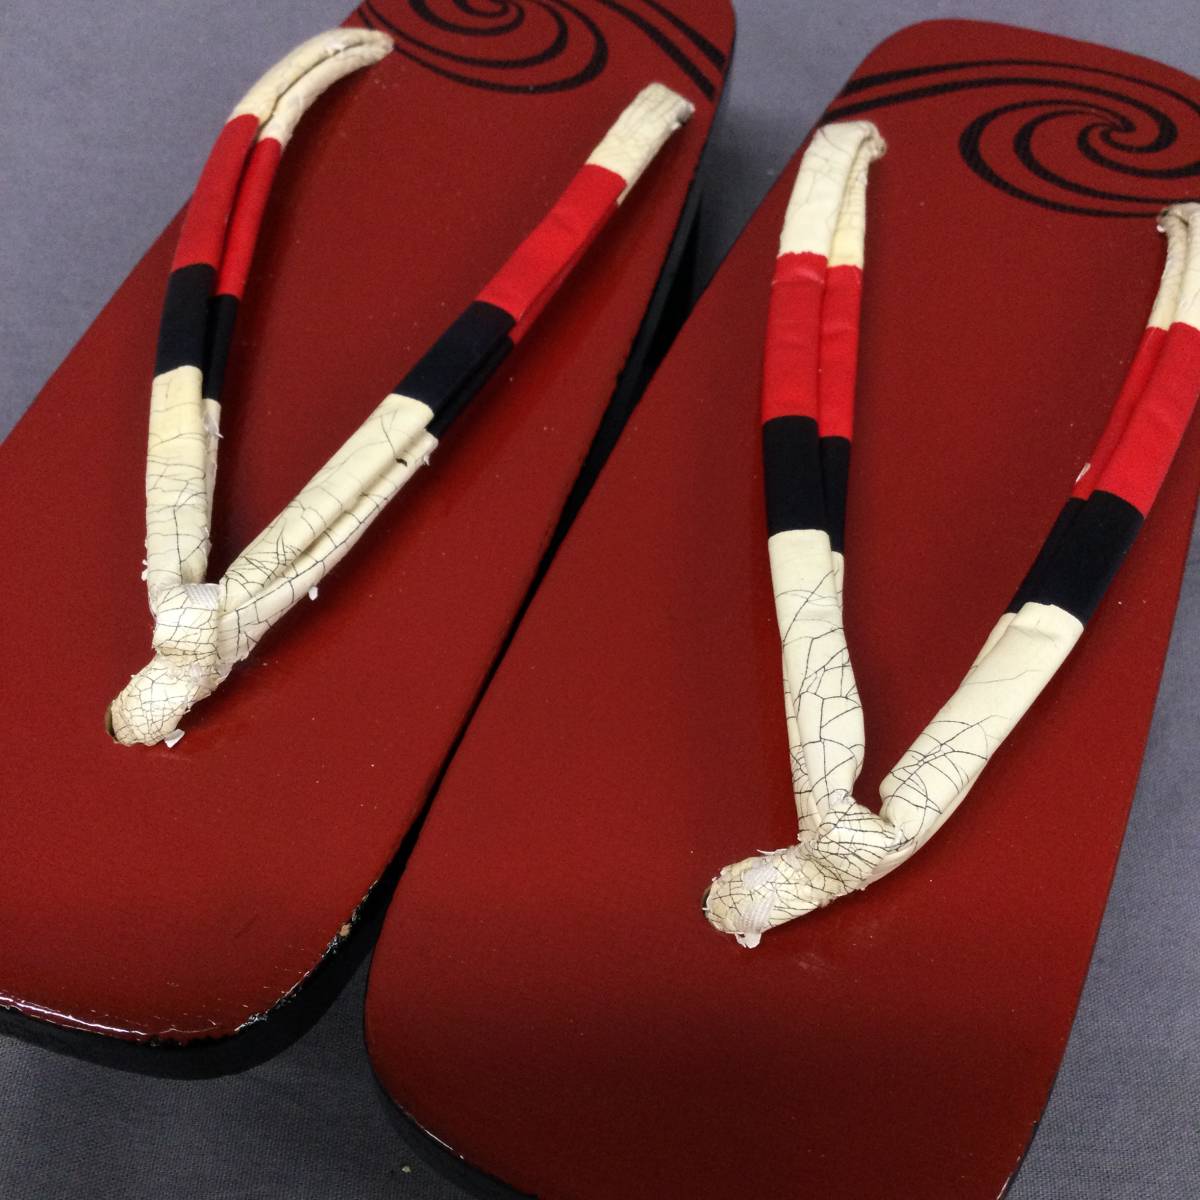 060201 254805-3 geta .. производитель неизвестен красный серия цвет аксессуары для кимоно кимоно юката надеть обувь предмет аксессуары 